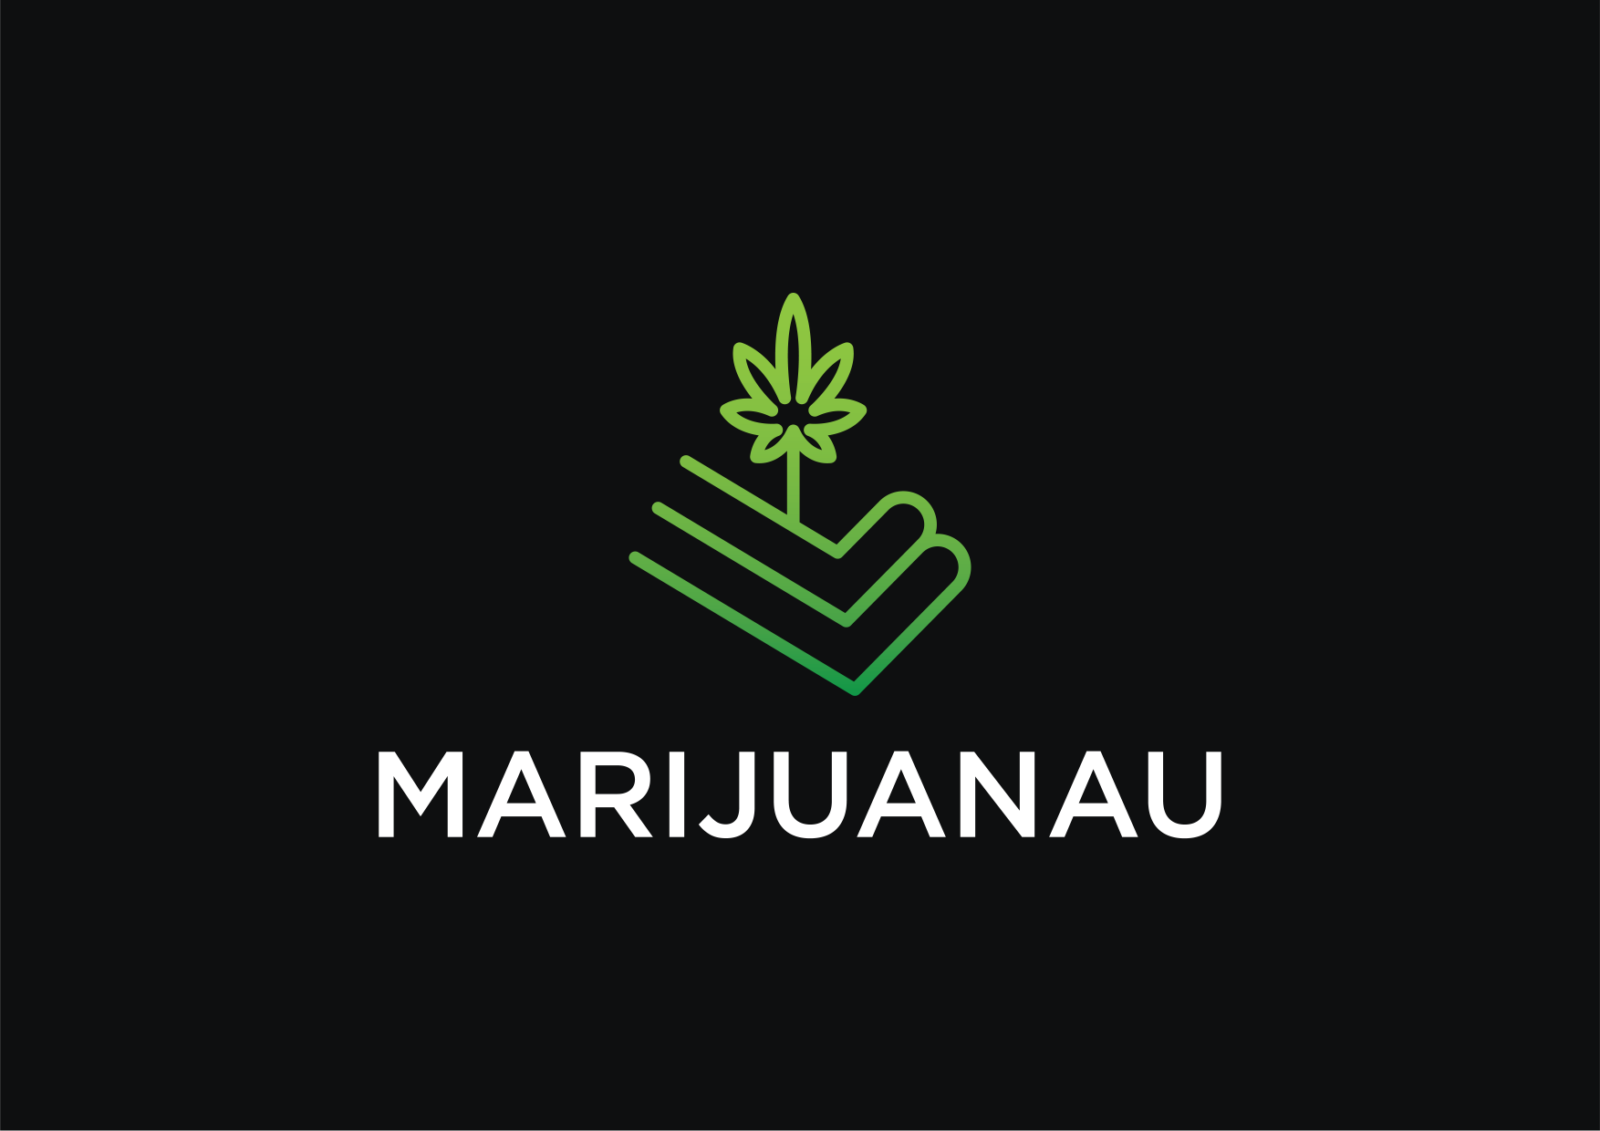 MarijuanaU.com